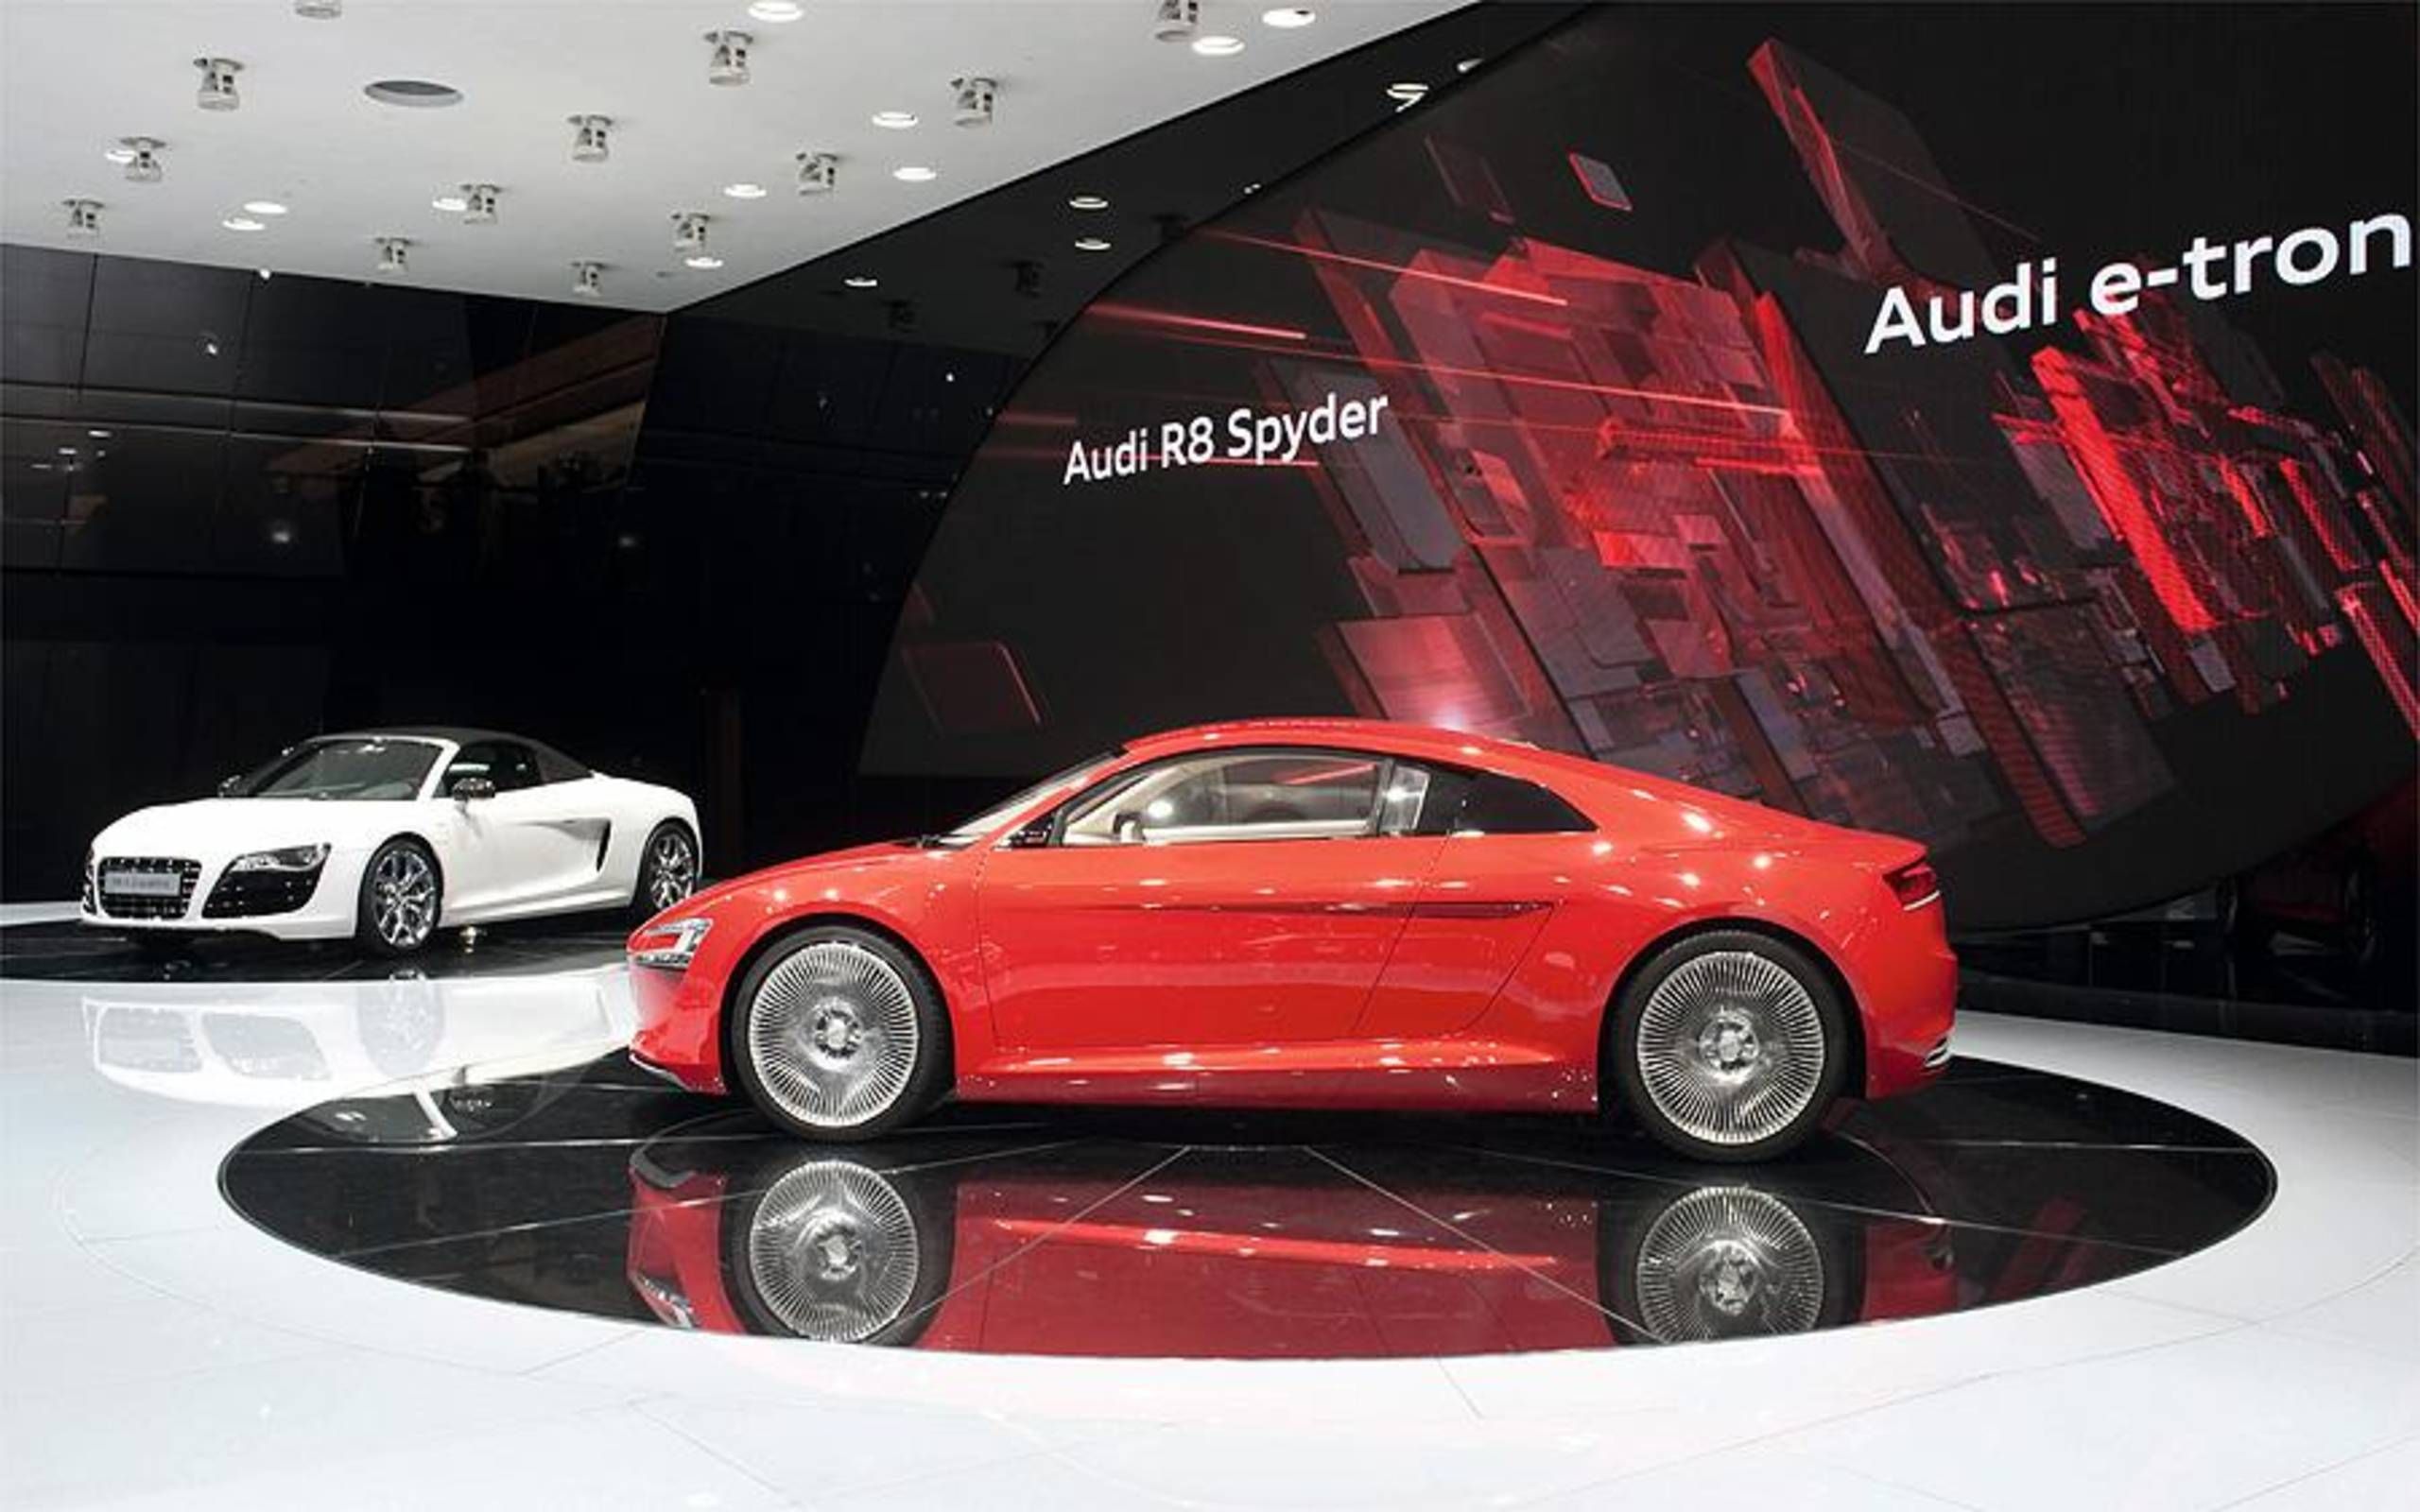 Audi previews future product plans